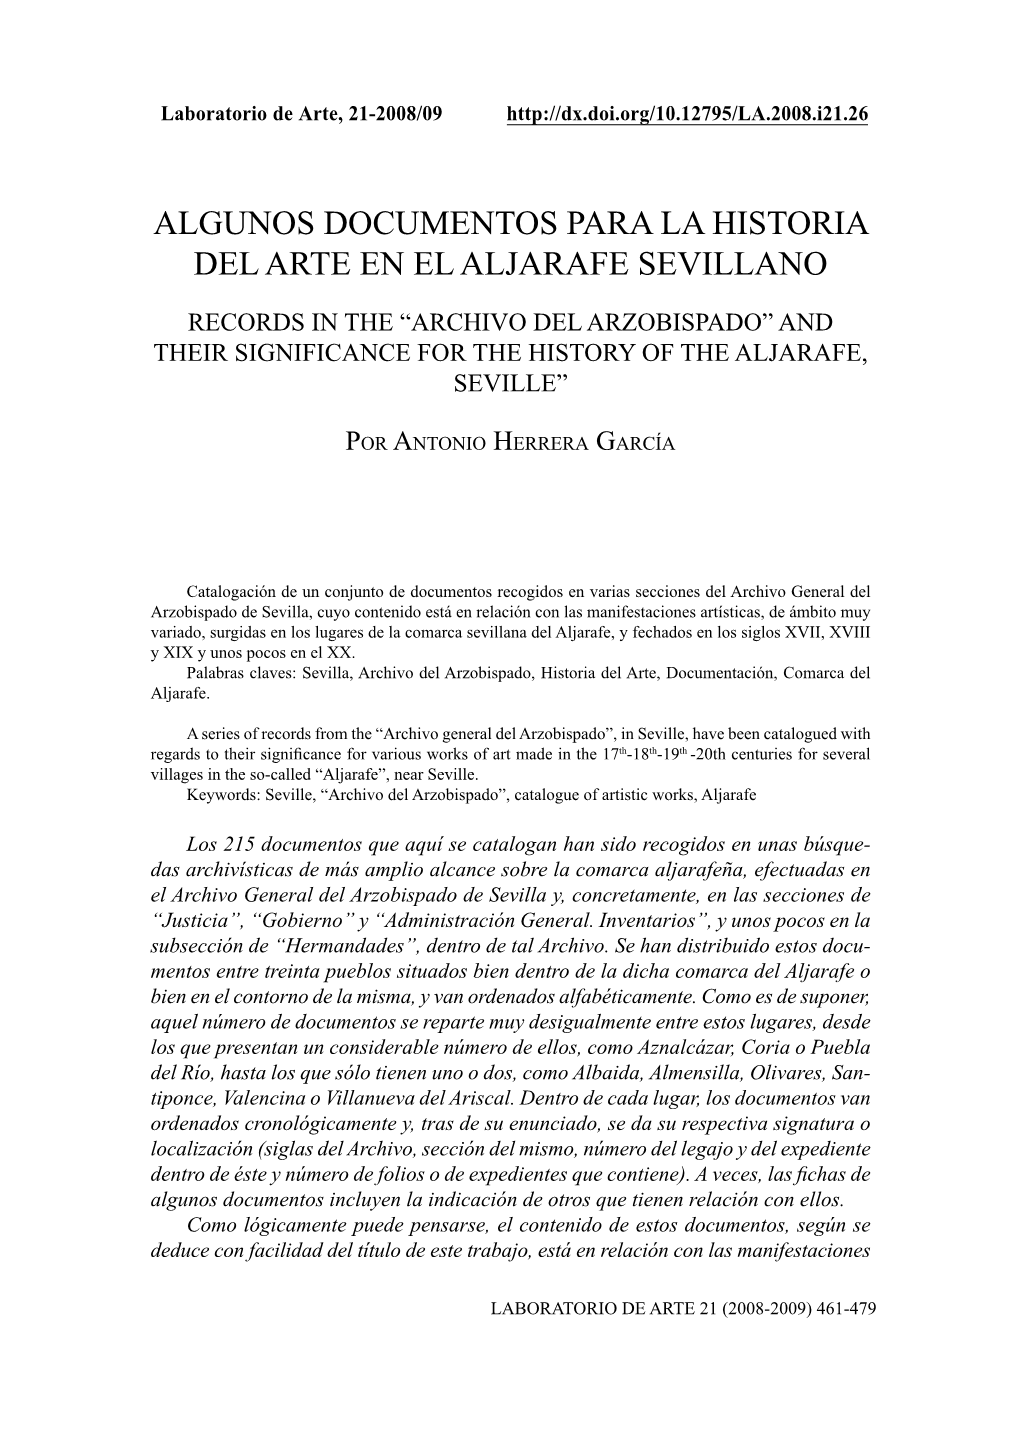 Algunos Documentos Para La Historia Del Arte En El Aljarafe Sevillano